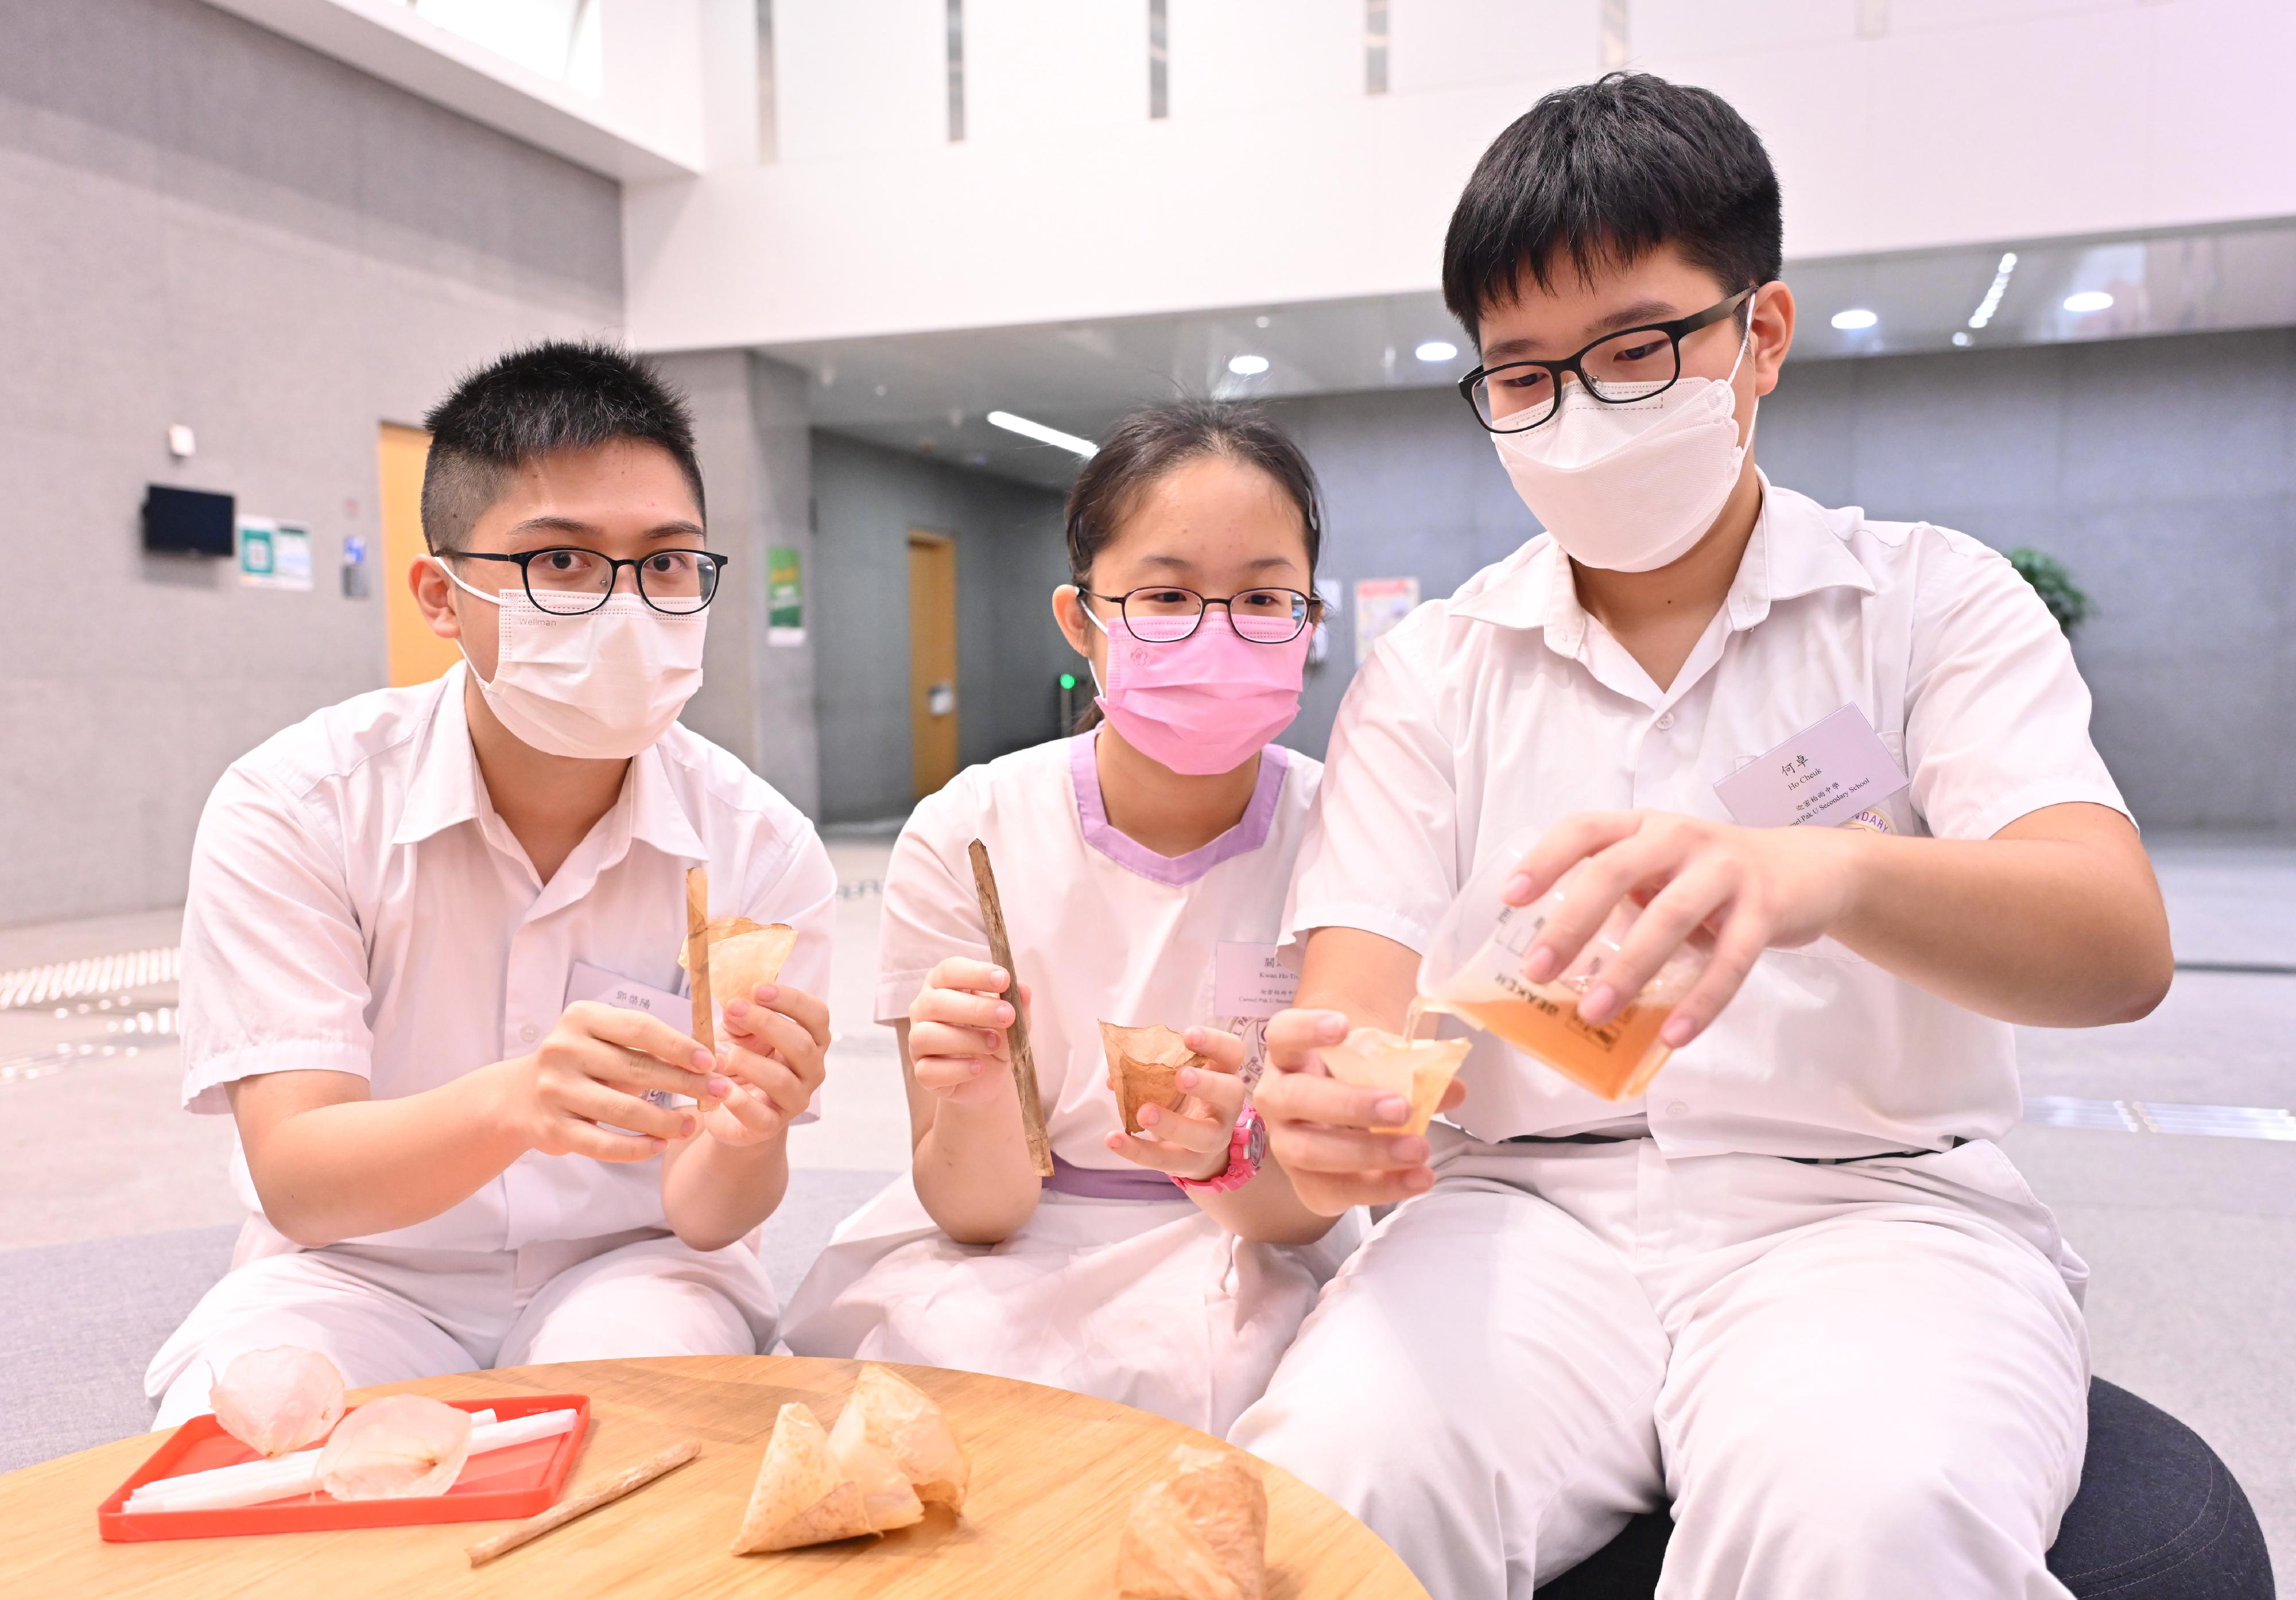 「創新科技嘉年華2022」將在十月二十二至三十日舉行。圖示迦密柏雨中學學生研發，由果皮製成的烤紅茶菌吸管和杯子。